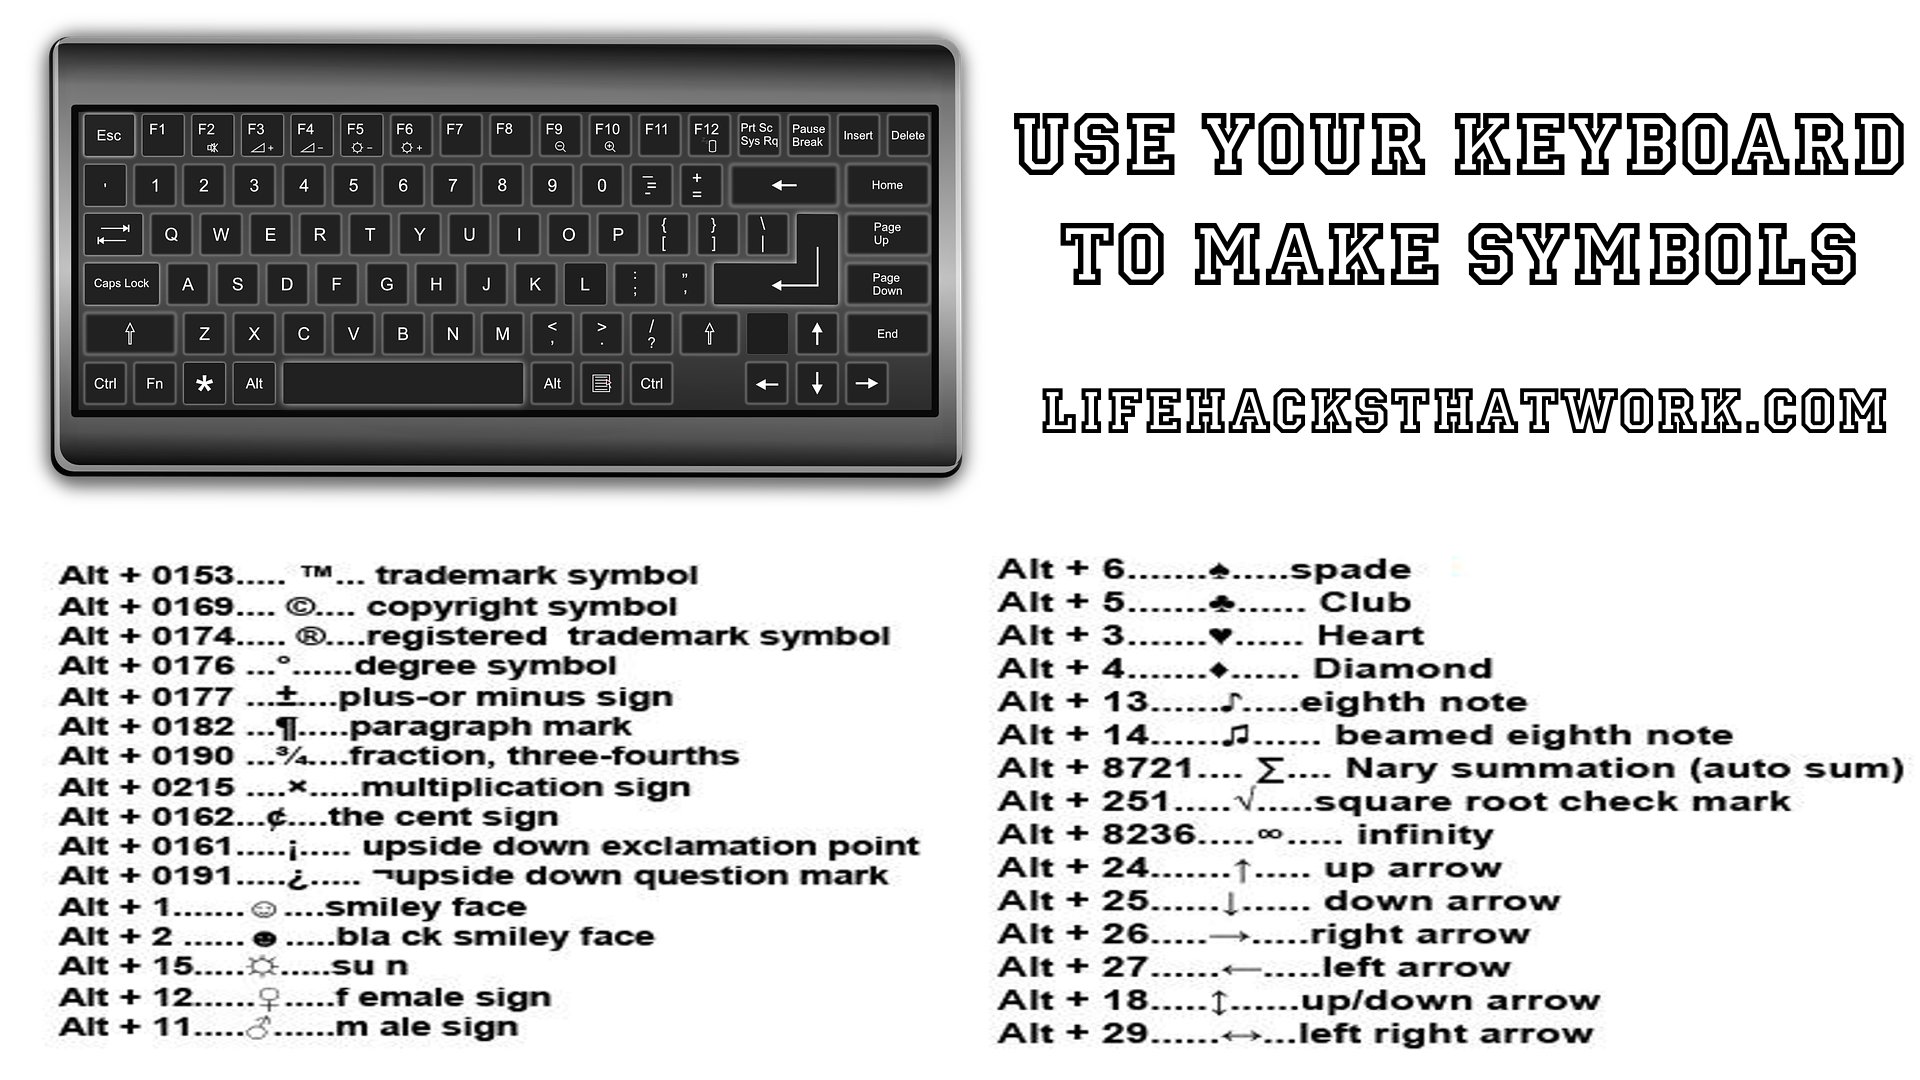 Как поставить знак менее на клавиатуре. Символы на клавиатуре. Символы на клавиатуре компьютера. Дополнительные значки на клавиатуре. Коды символов на клавиатуре.